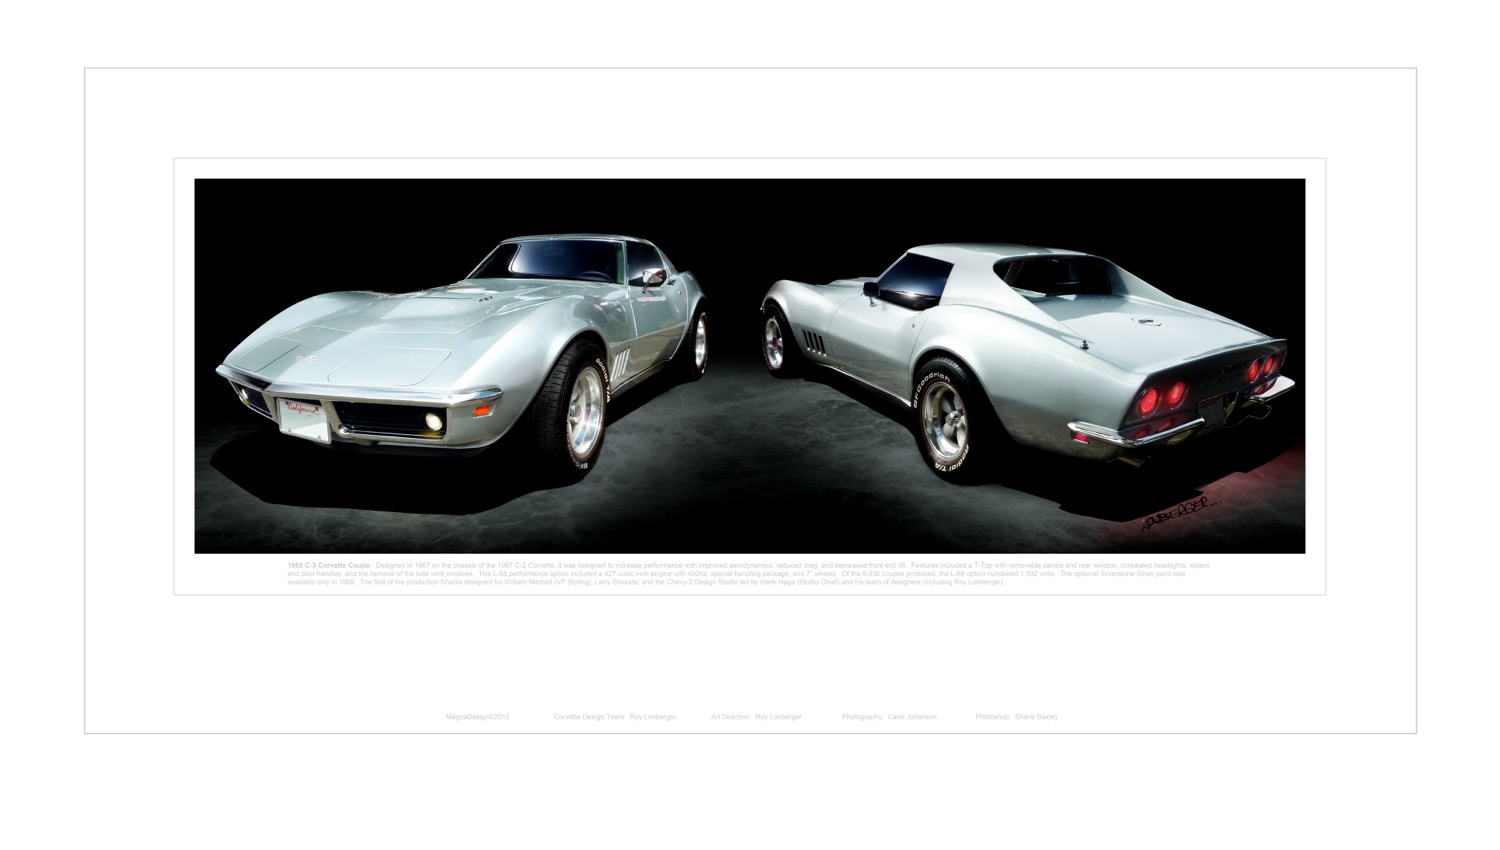 12-Corvette 1968-C3-Silver-Wall Poster-LowRez.jpg